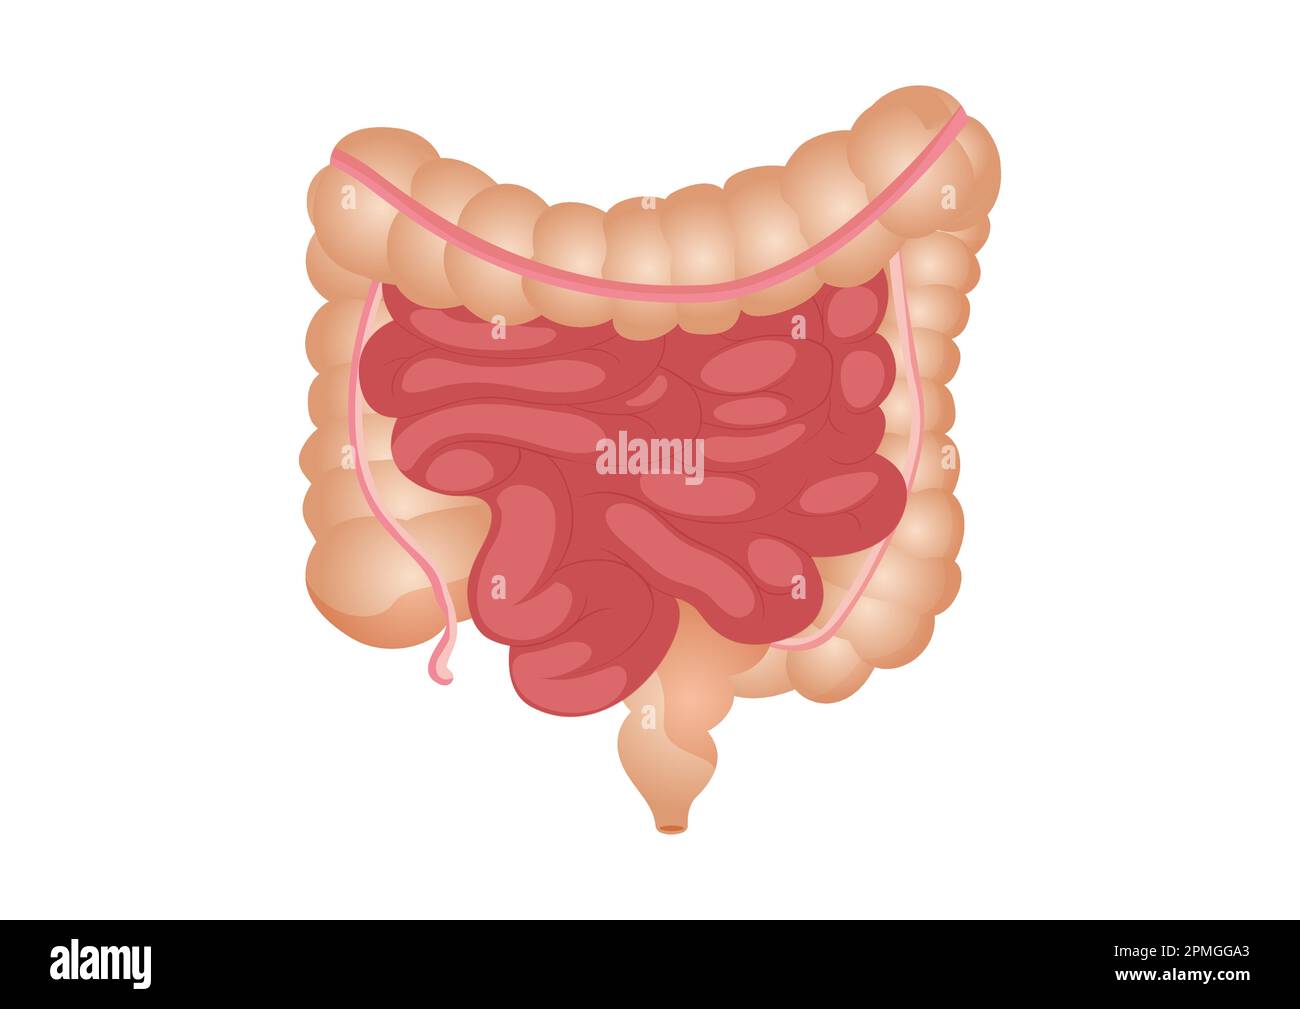 Rappresentazione vettoriale piatta dell'intestino tenue e grande. L'organo interno umano, il tratto digestivo. Illustrazione vettoriale di intestino umano isolato Illustrazione Vettoriale